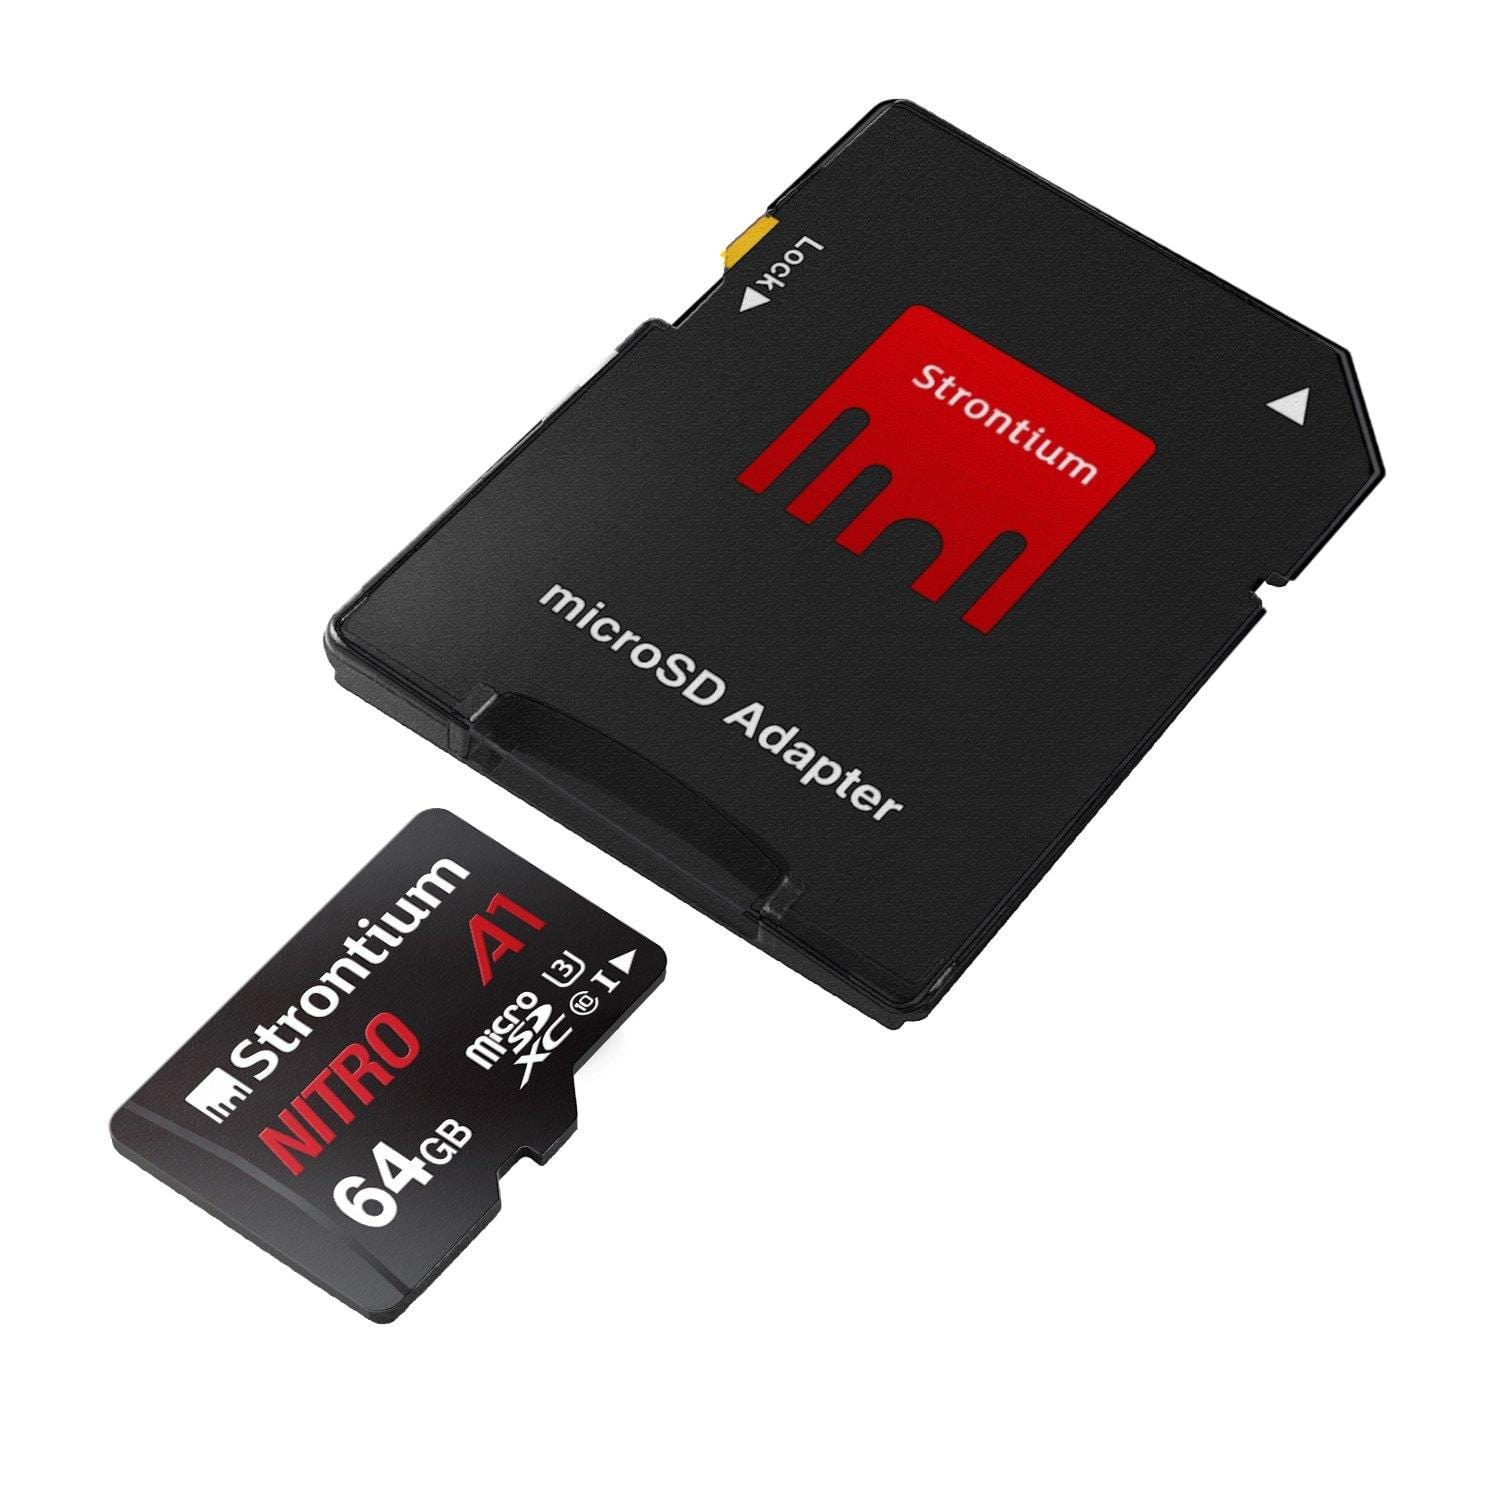 Strontium Nitro A1 64GB Micro SDXC Memory Card 100MB/s A1 UHS-I U3 Class 10-Memory Cards-dealsplant